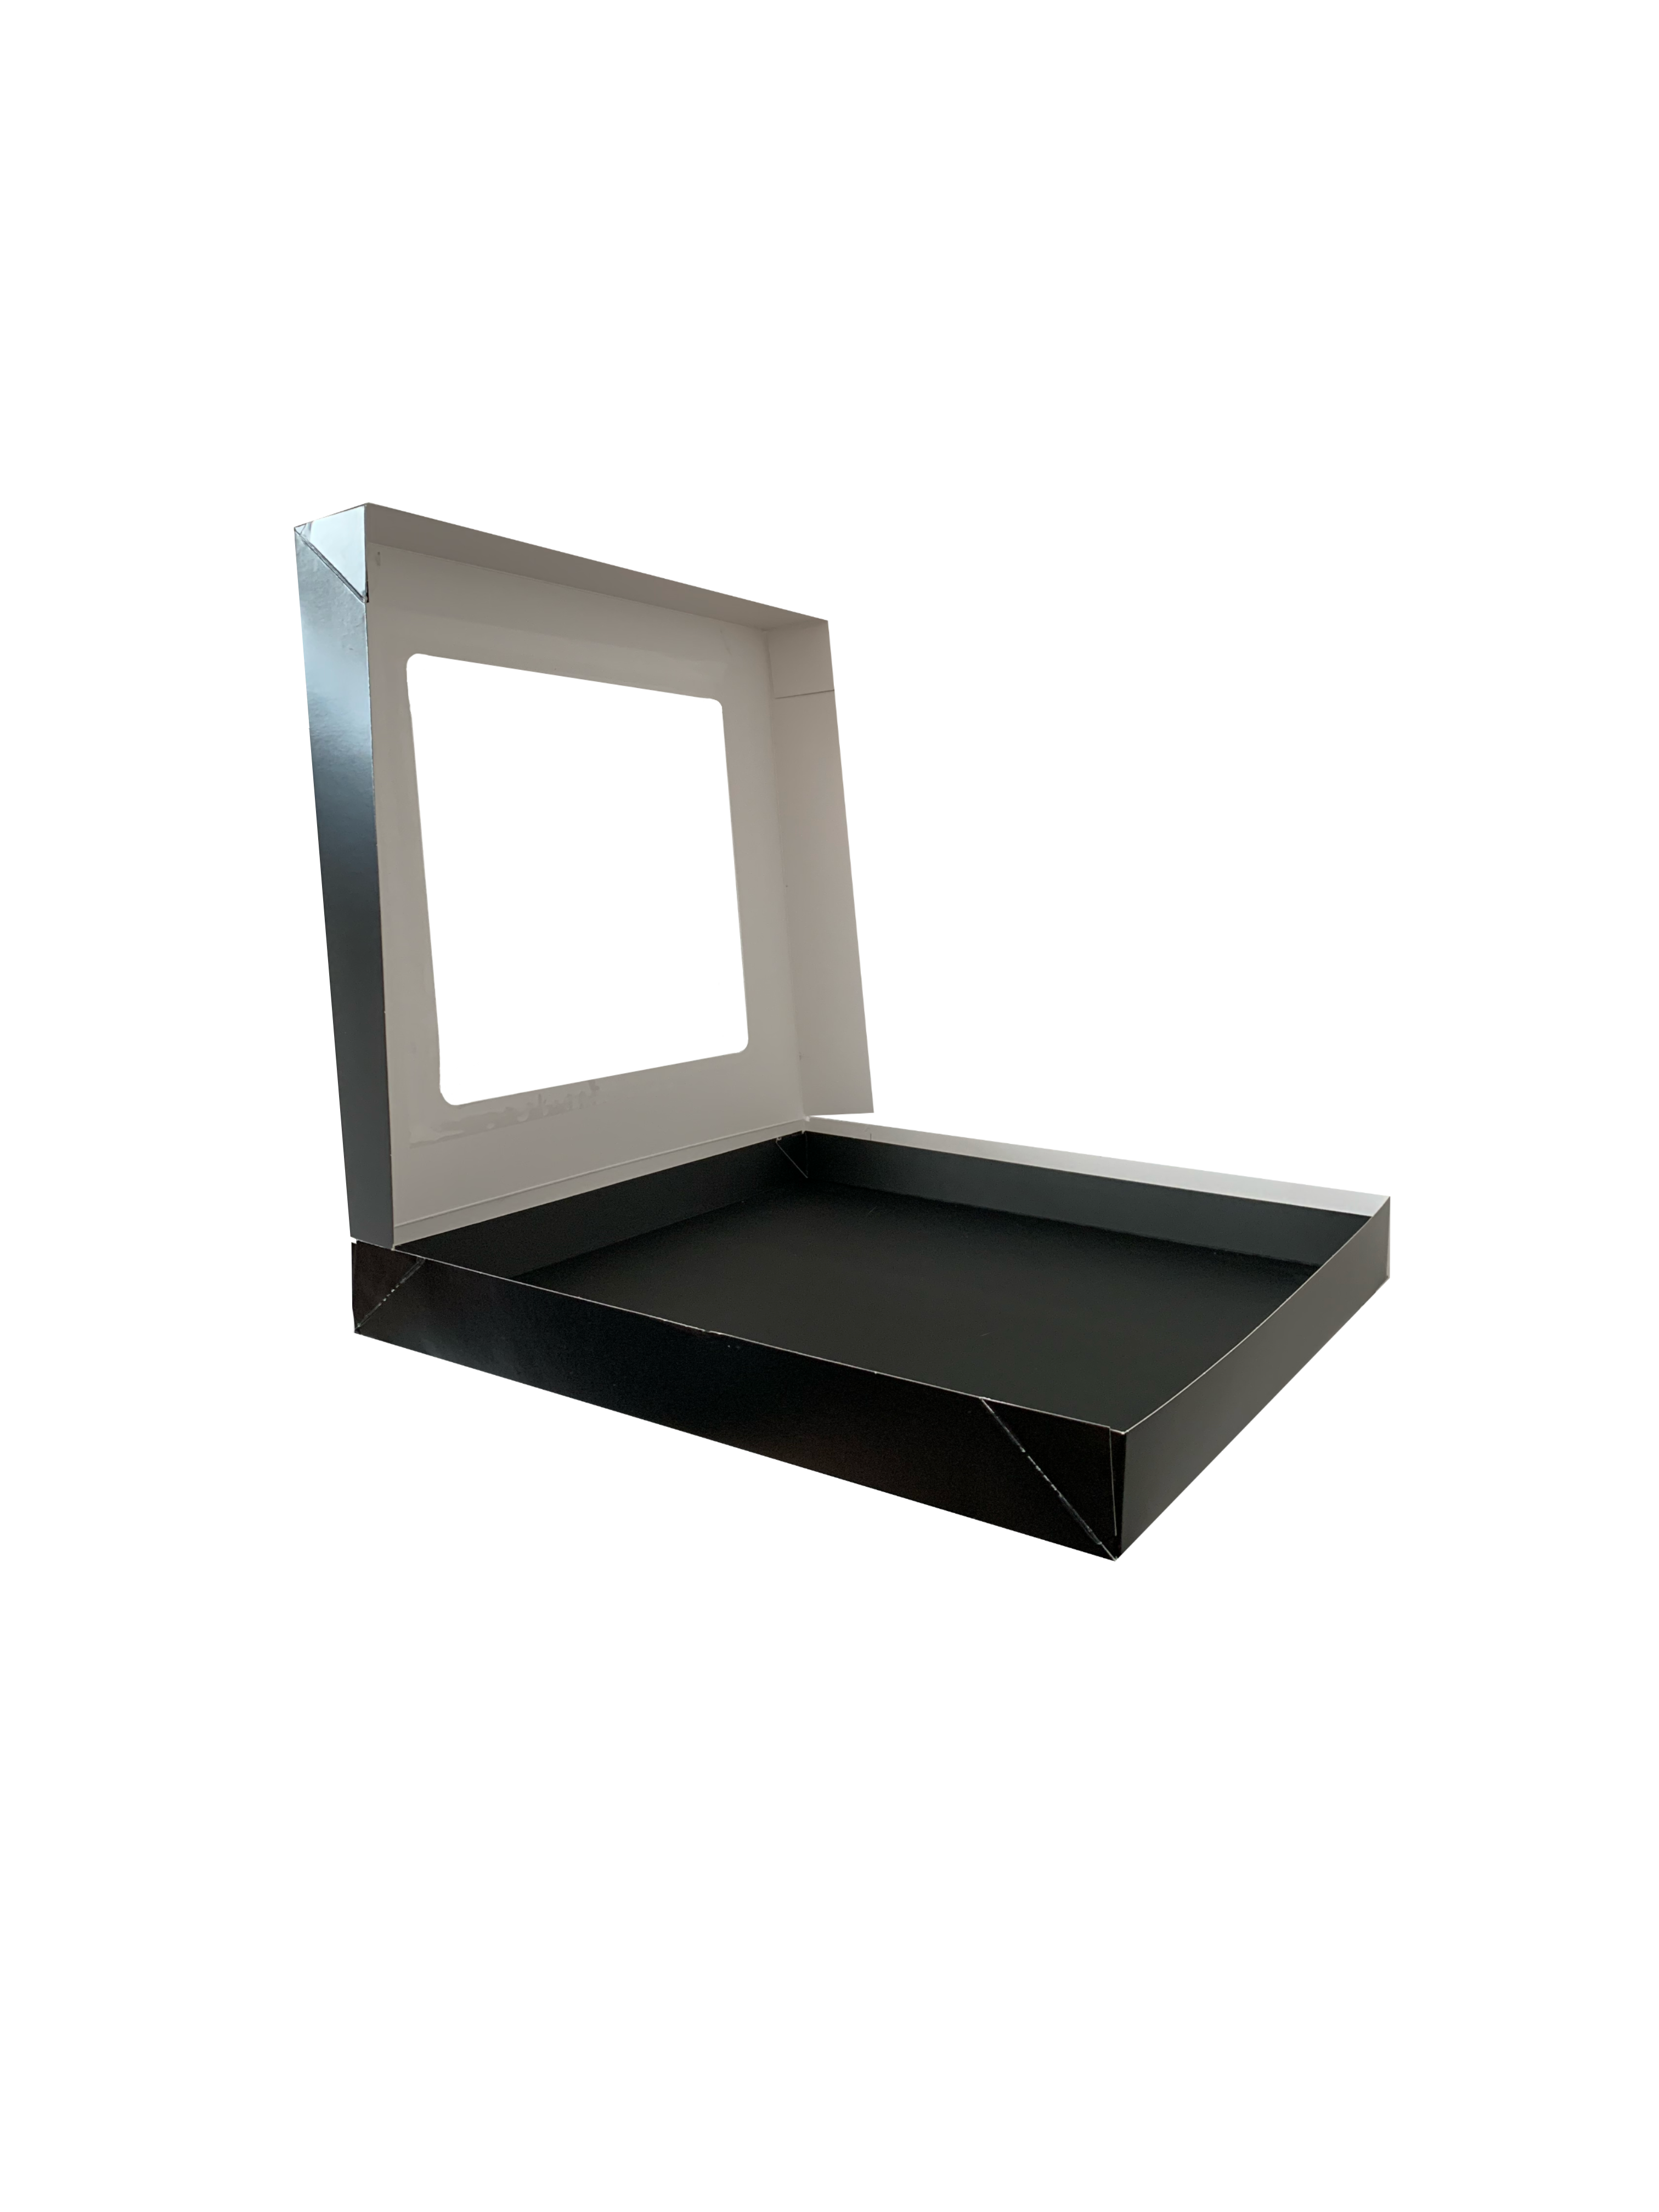 Bio Party-Sushi-Box 11 / M, 320x320x52 mm, "Black Edition", schwarz, mit Sichtfenster & Tray, 80 Stück / Karton